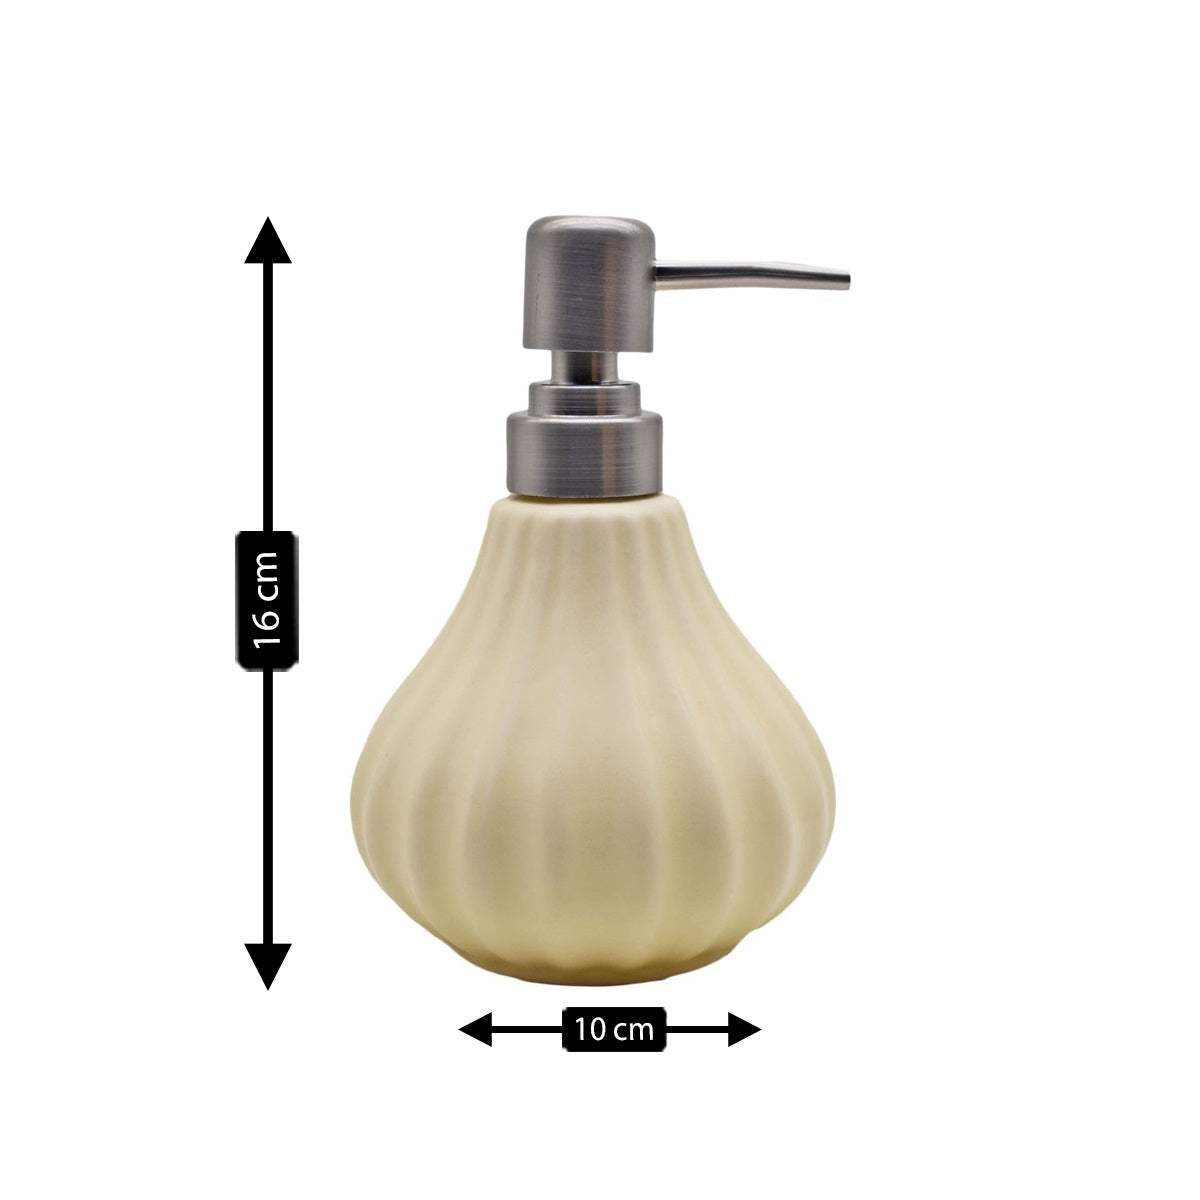 Ceramic Soap Dispenser handwash Pump for Bathroom, Set of 1, Cream (8645)